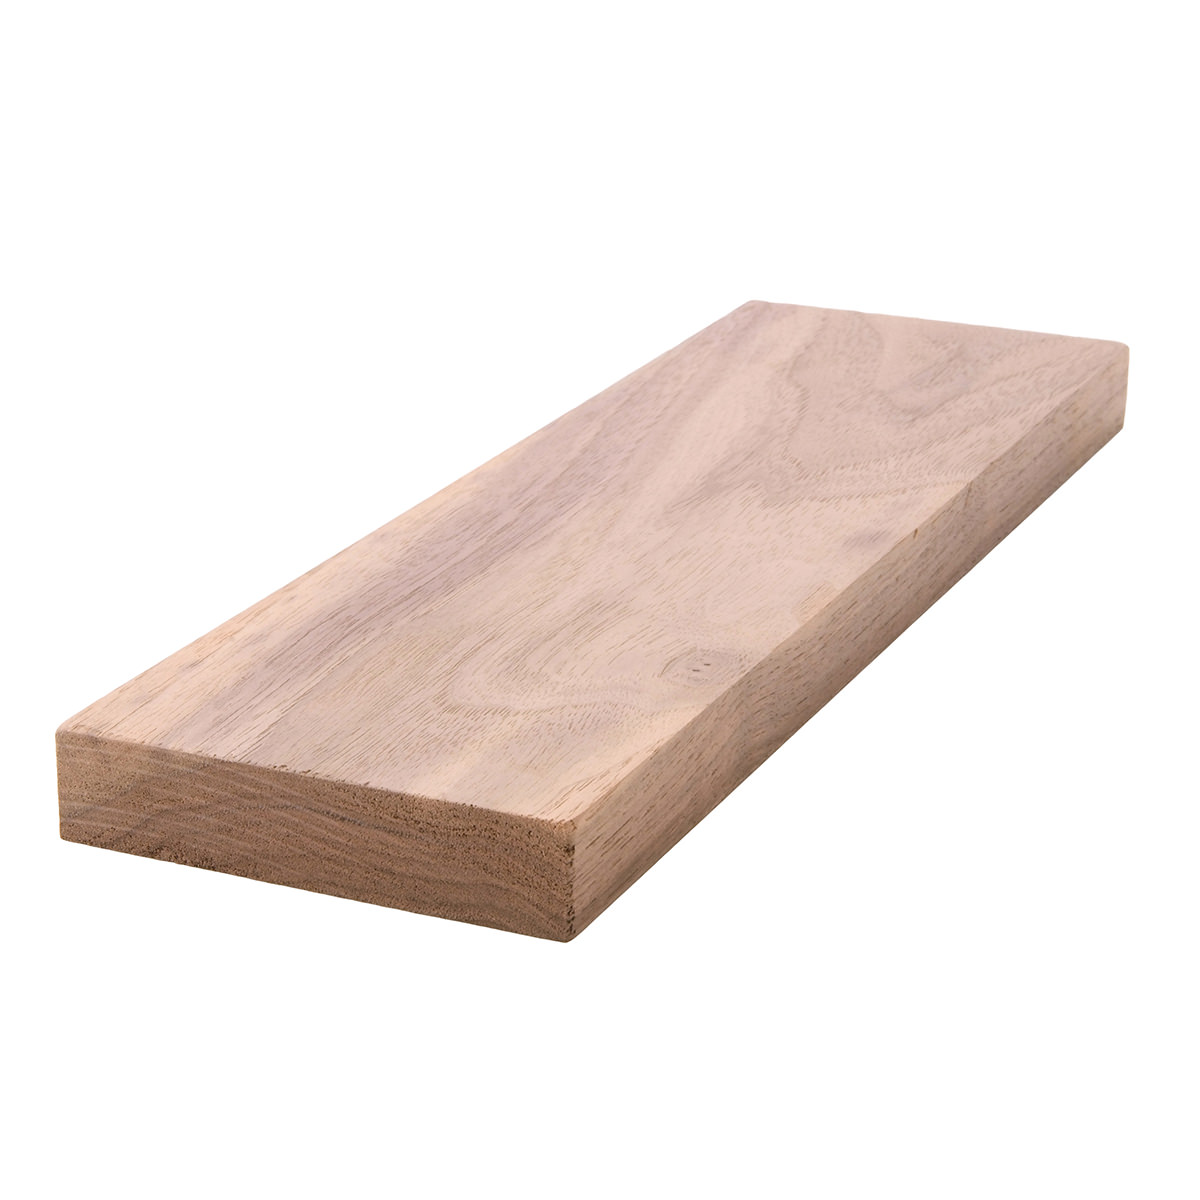 1x4 (3/4" x 31/2") Black Walnut S4S Lumber, Boards